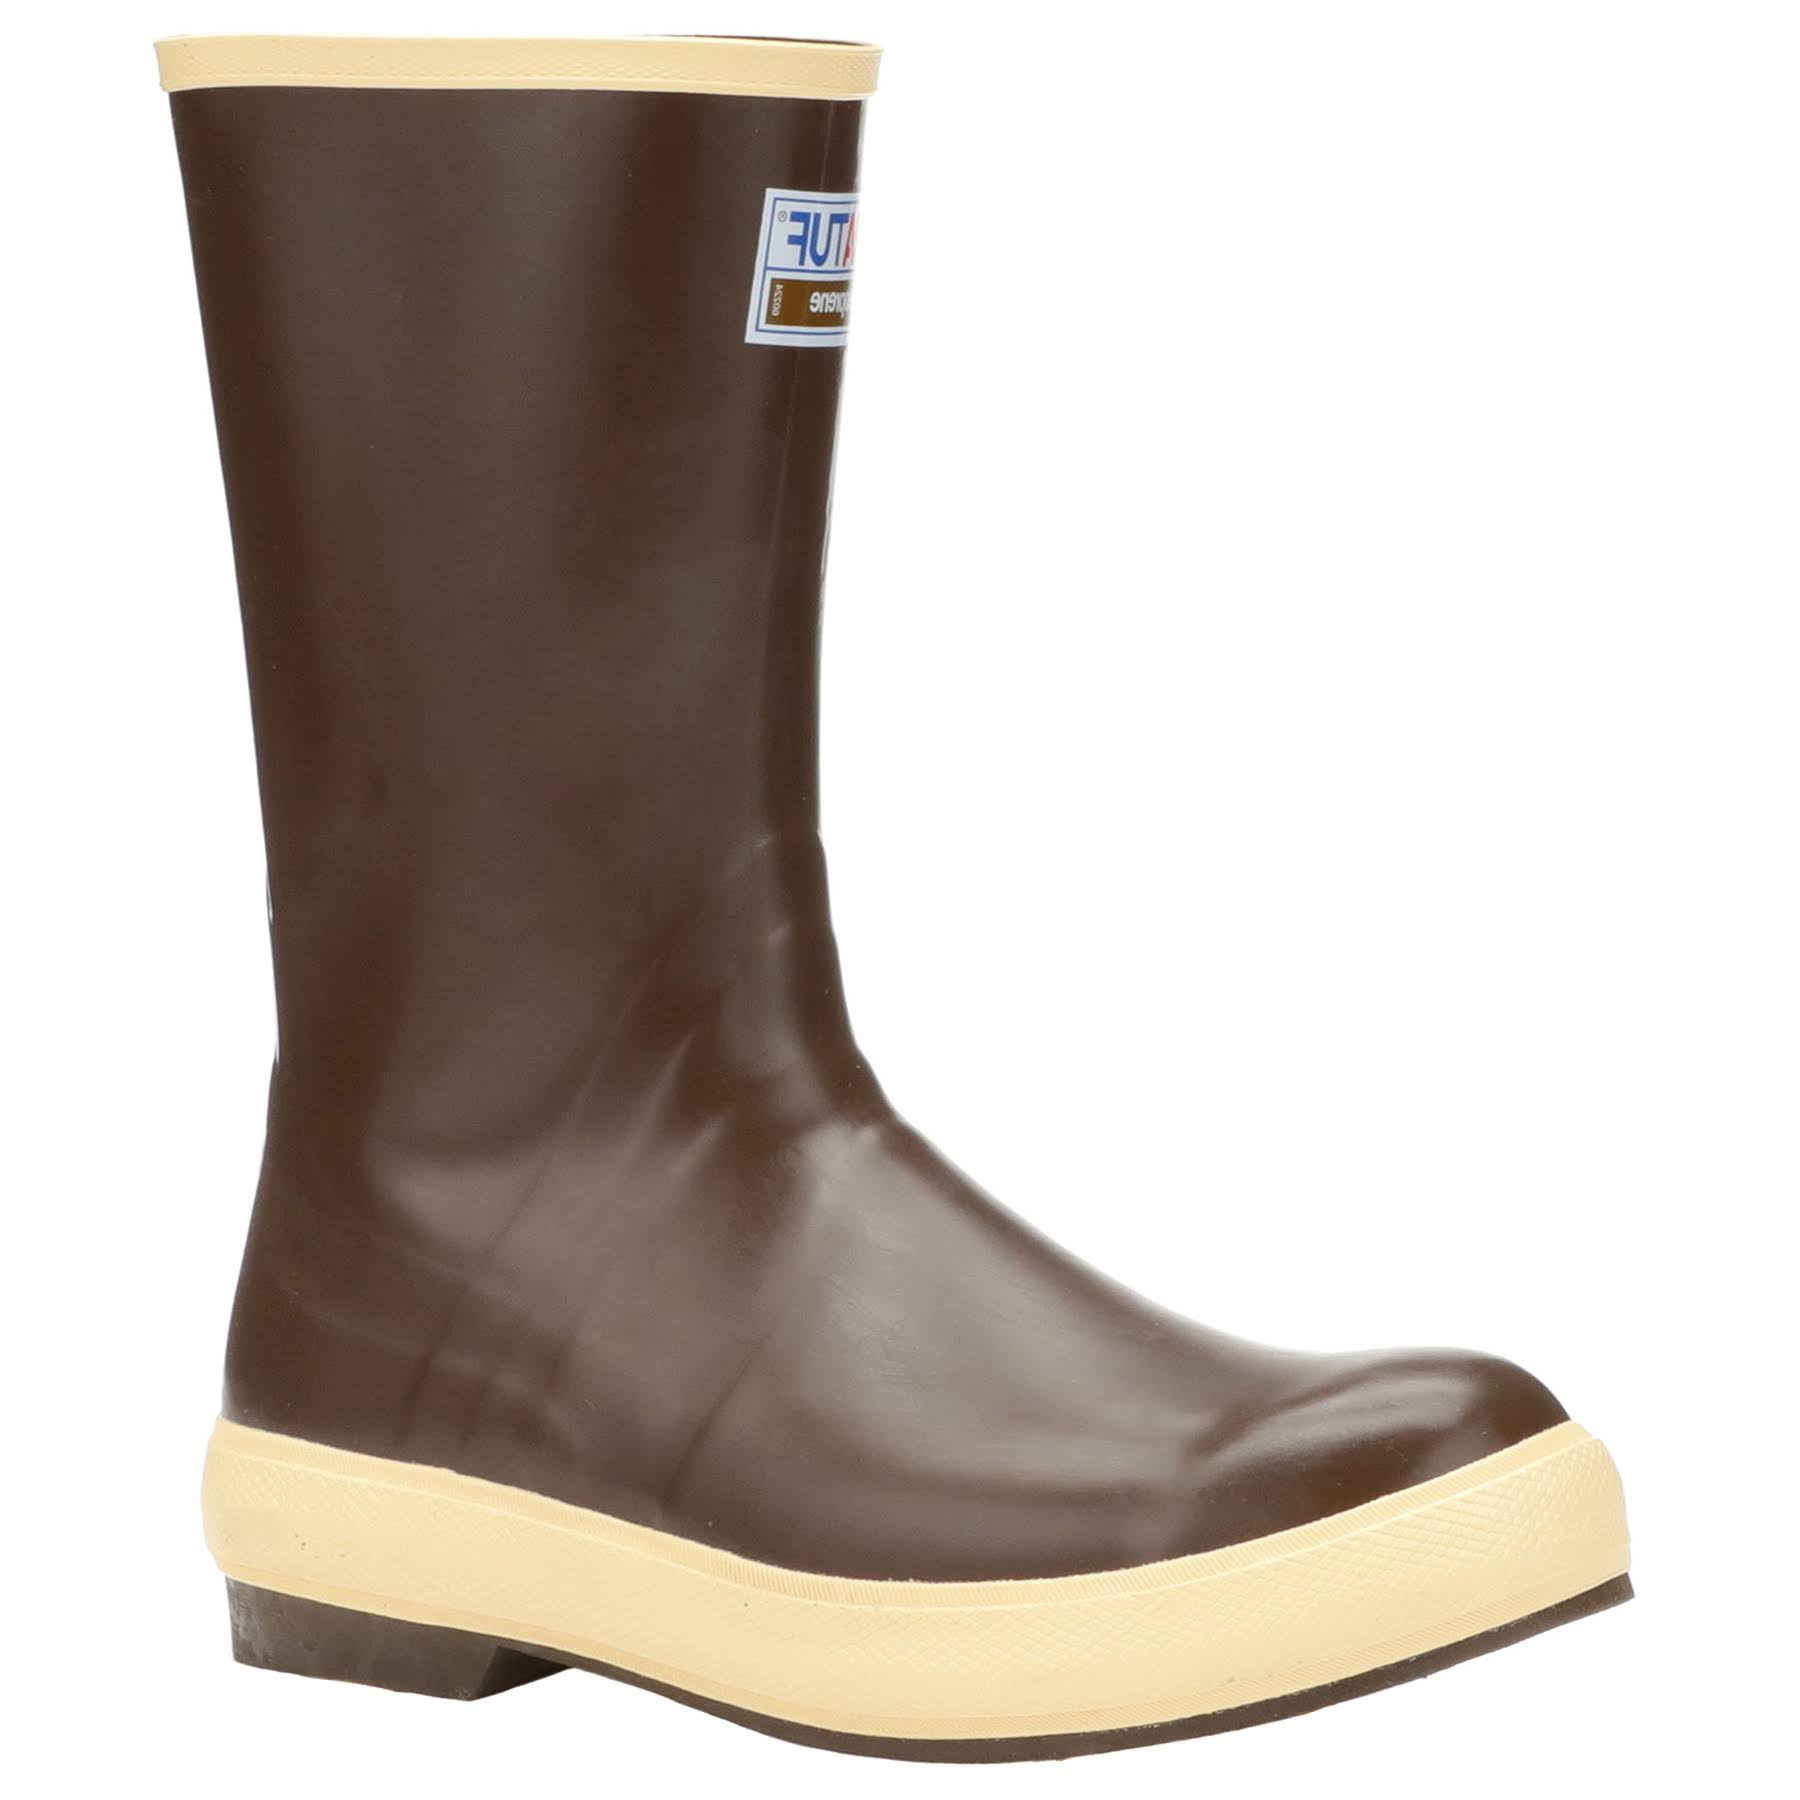 Xtratuf Men's Legacy Neoprene Boots - Copper Tan, 12 US